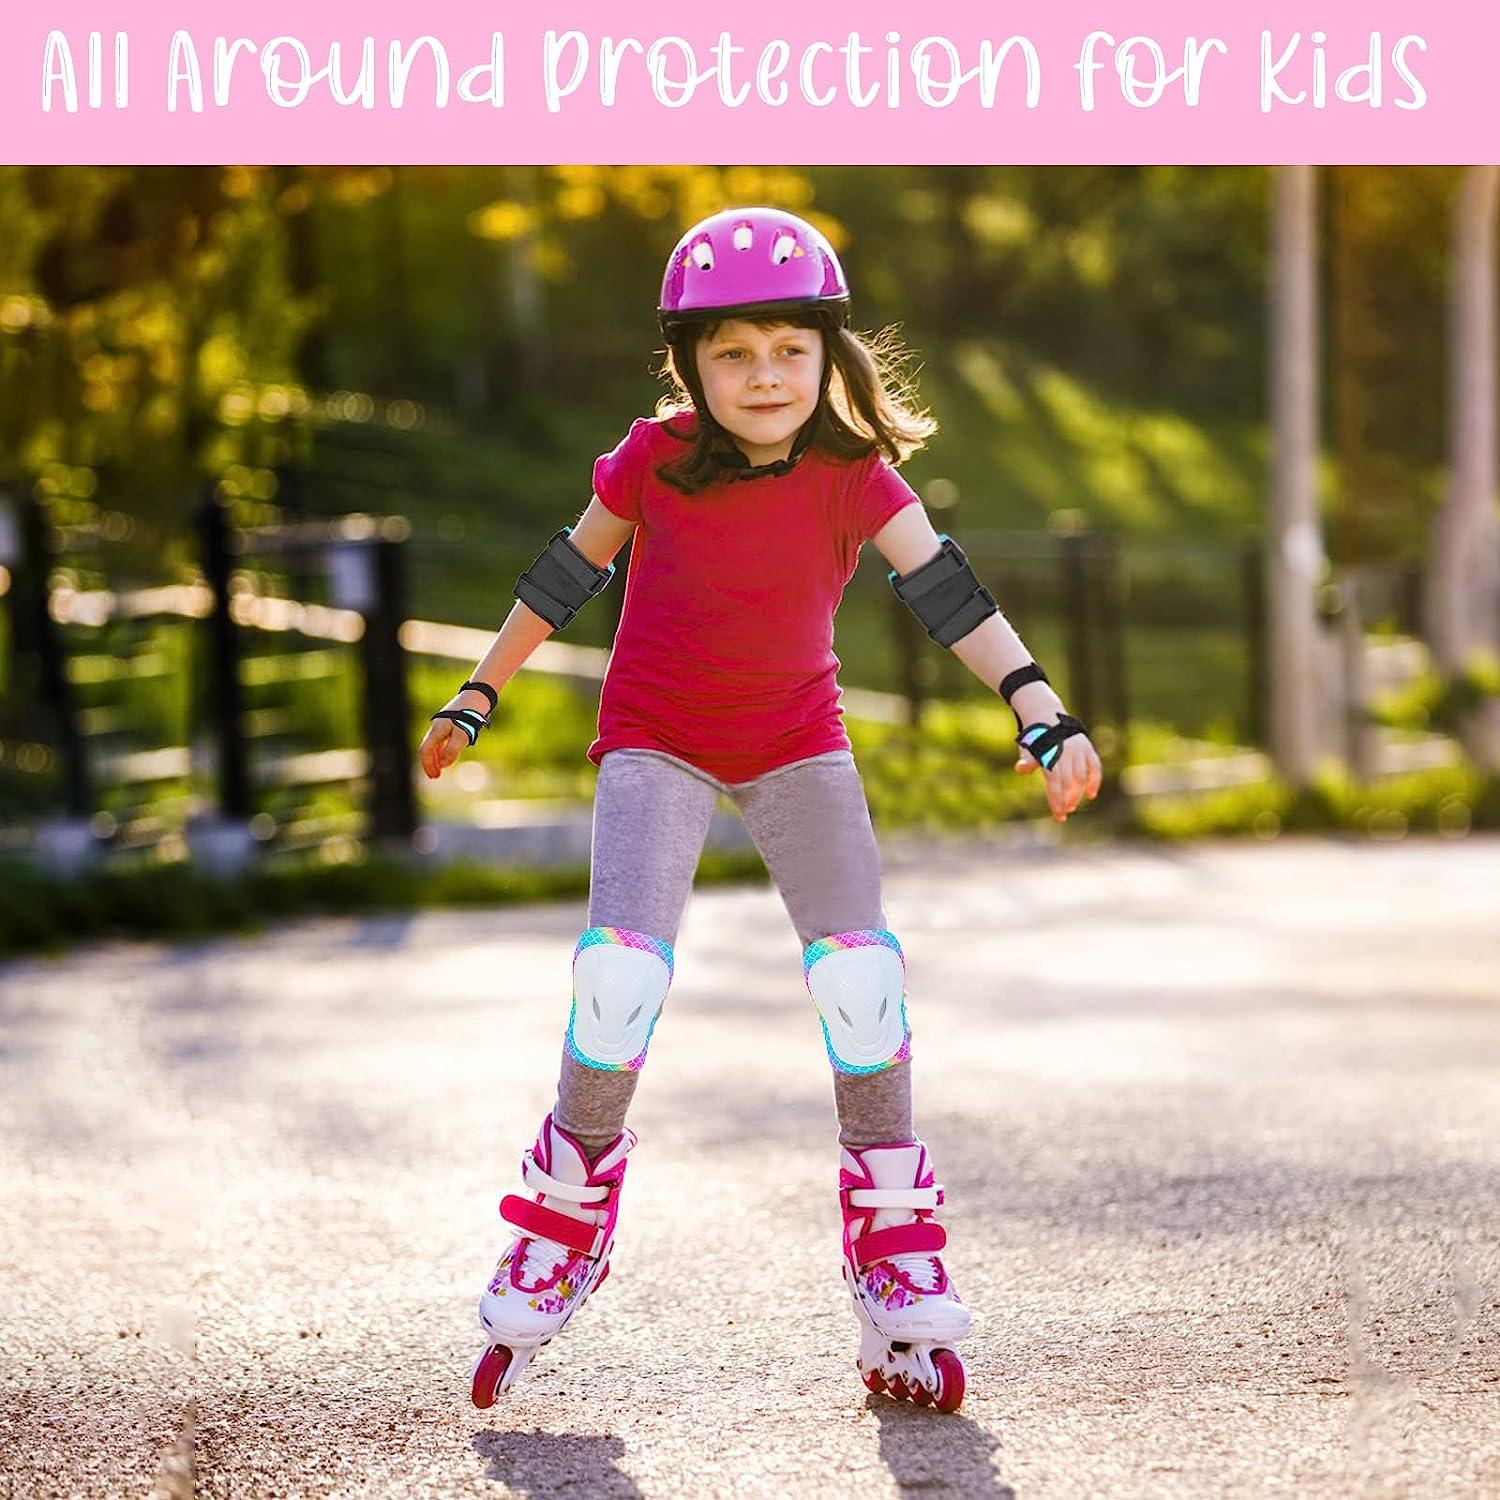 Protection - Skates